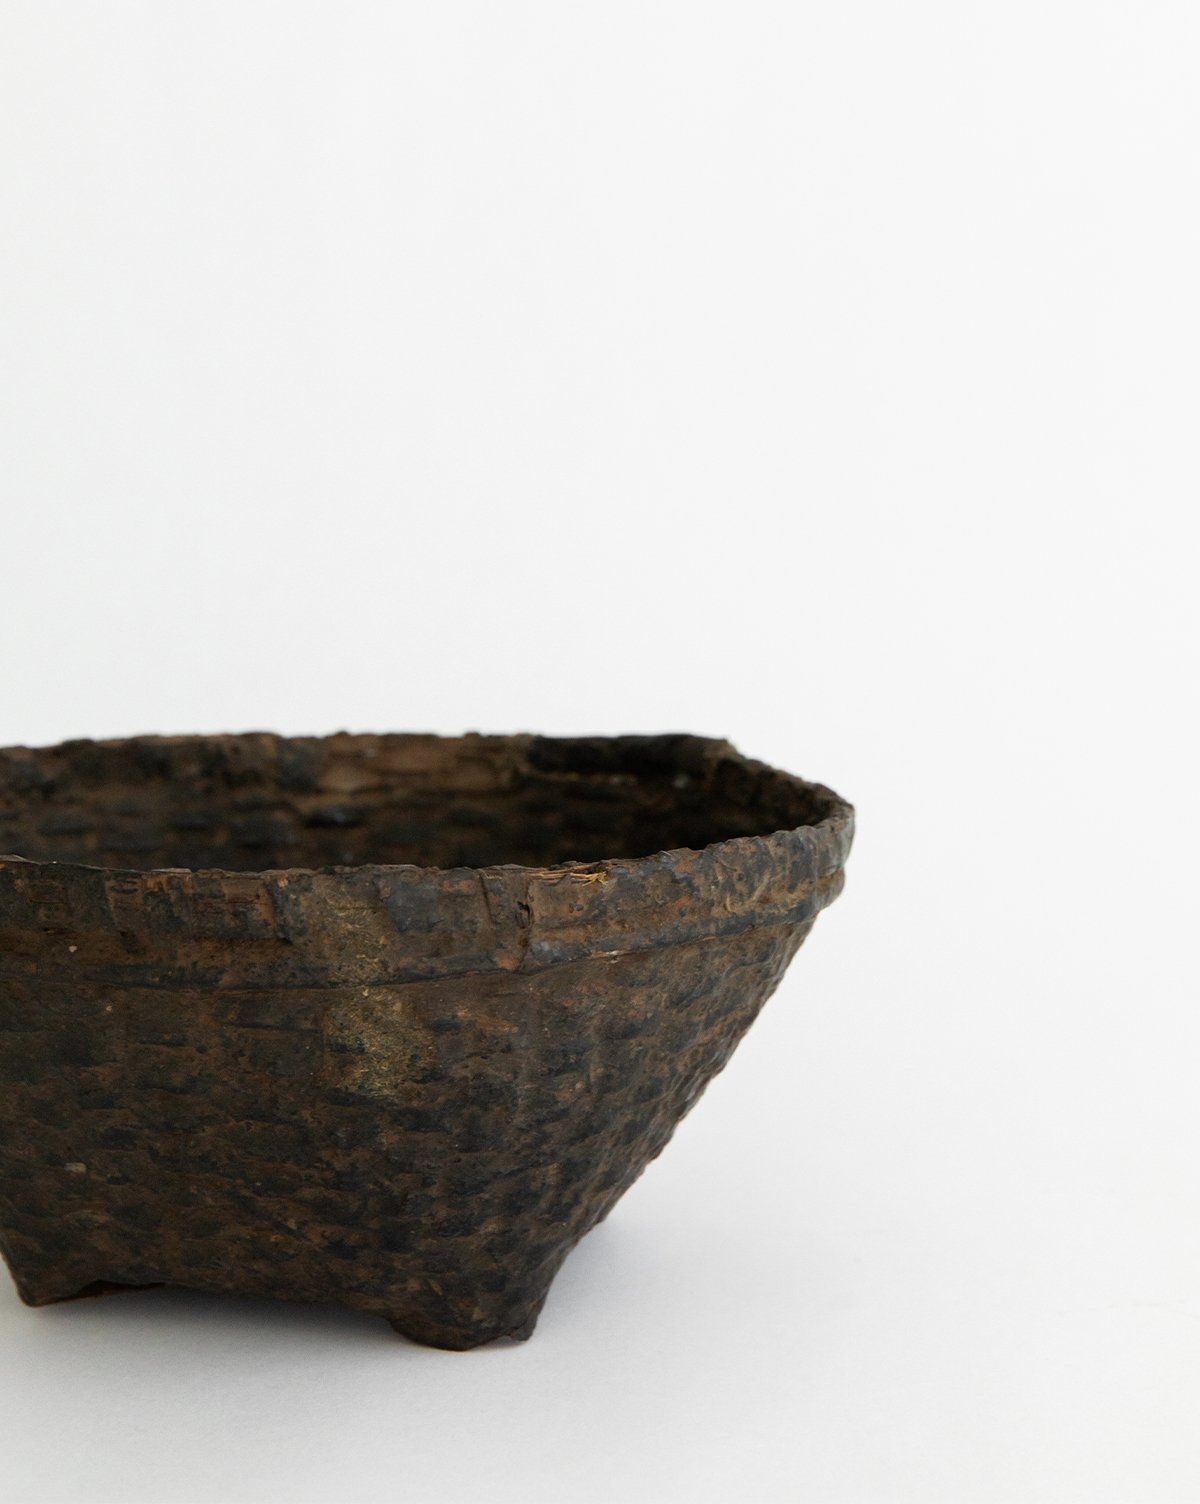 Found Weathered Cane Basket - Image 1